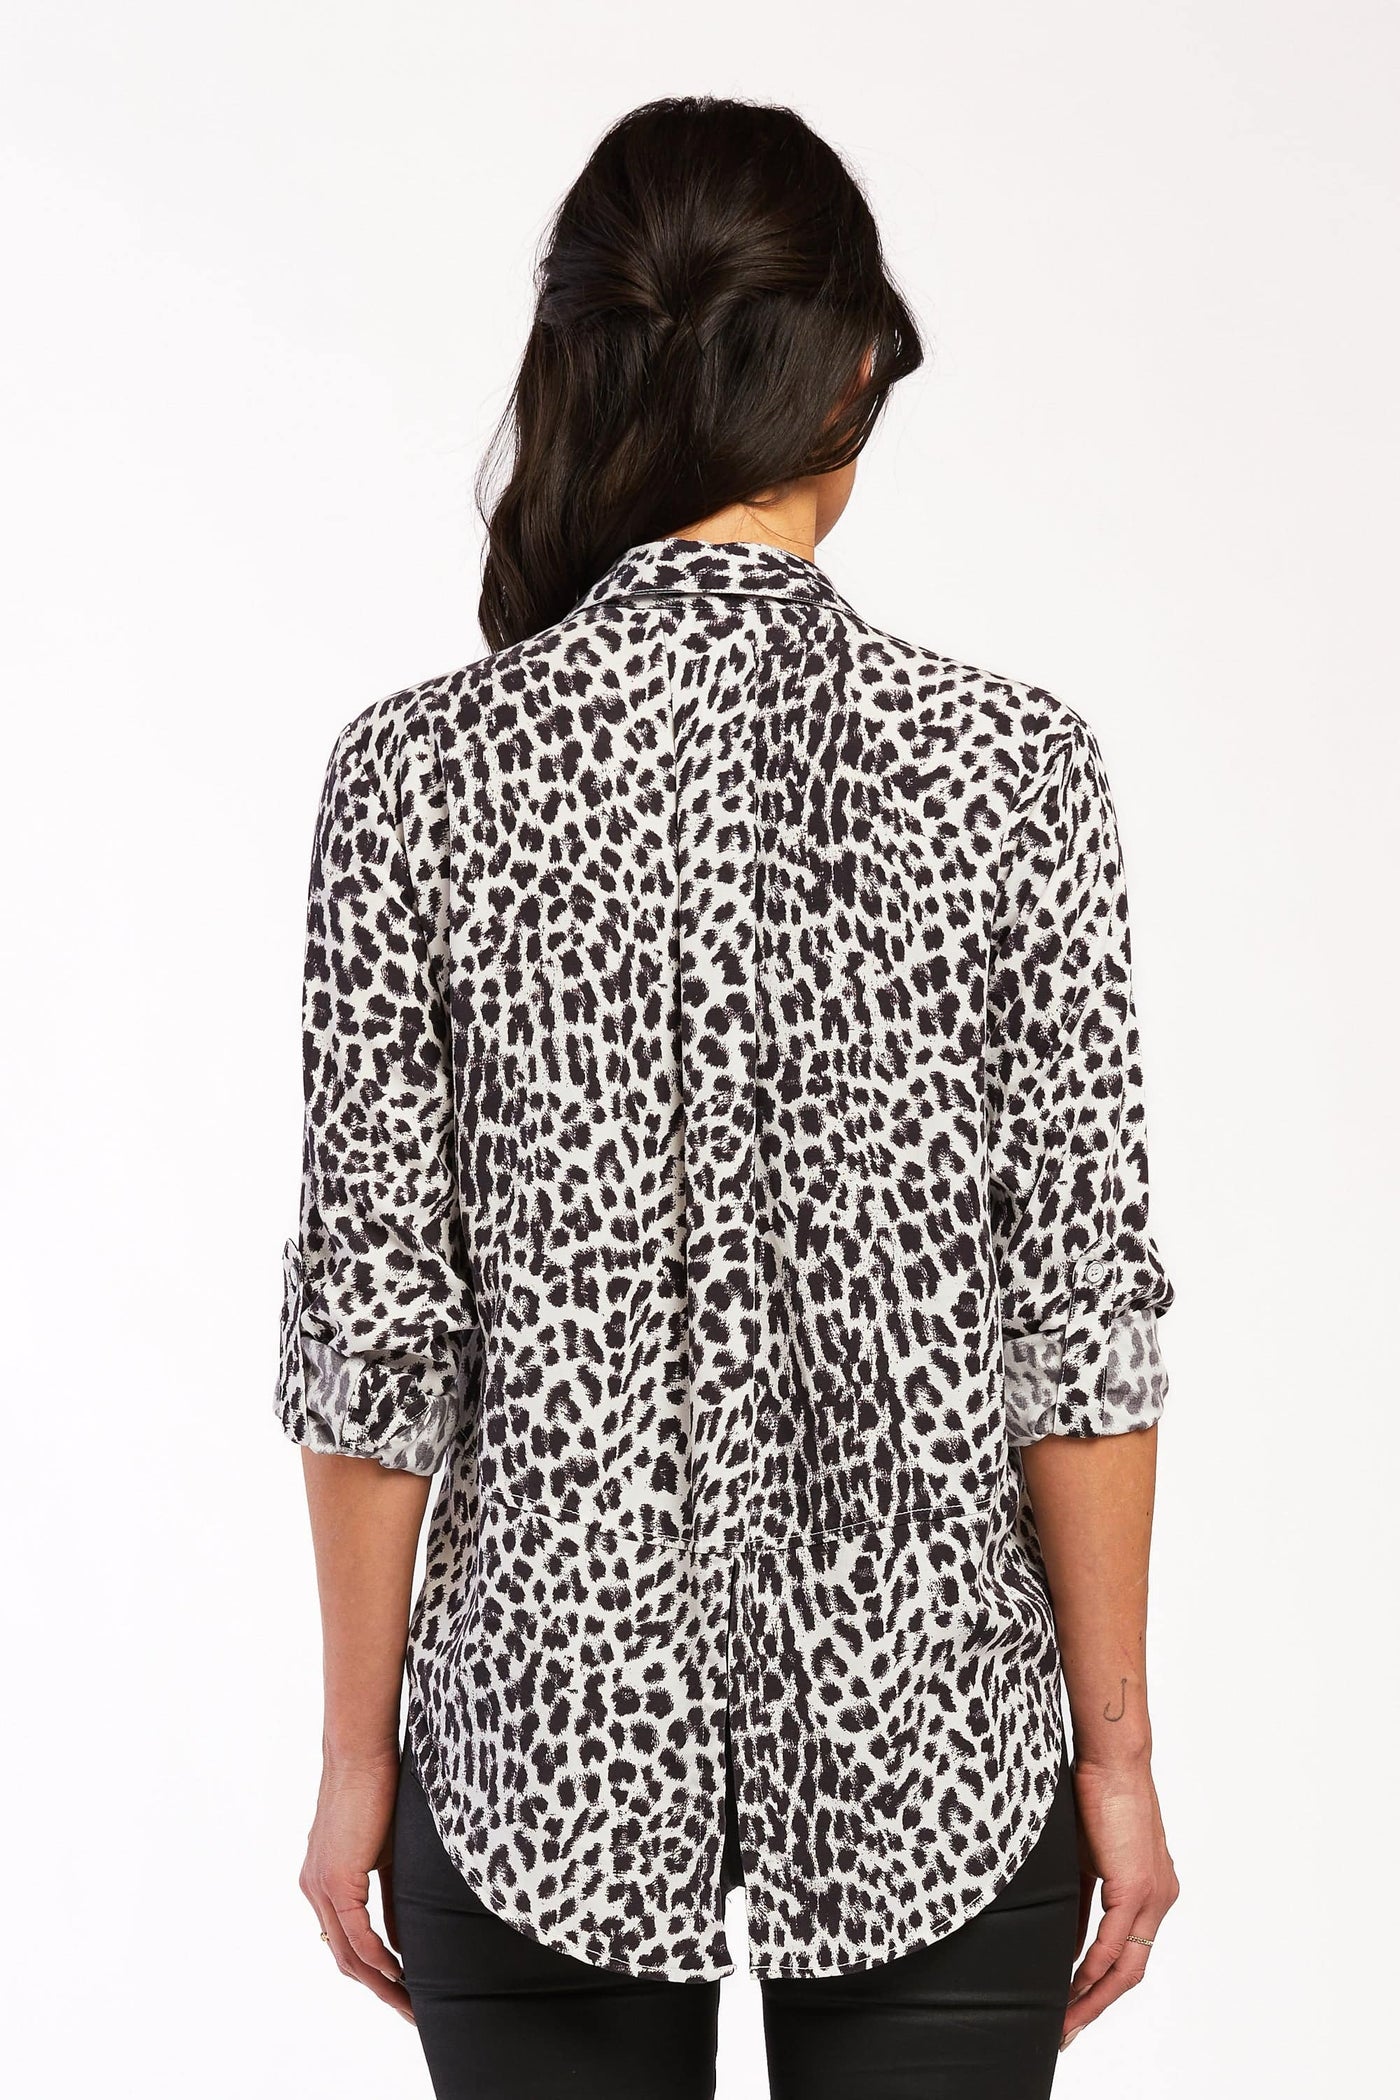 Riley White Black Animal Button-Up Shirt - Tops - Velvet Heart Clothing